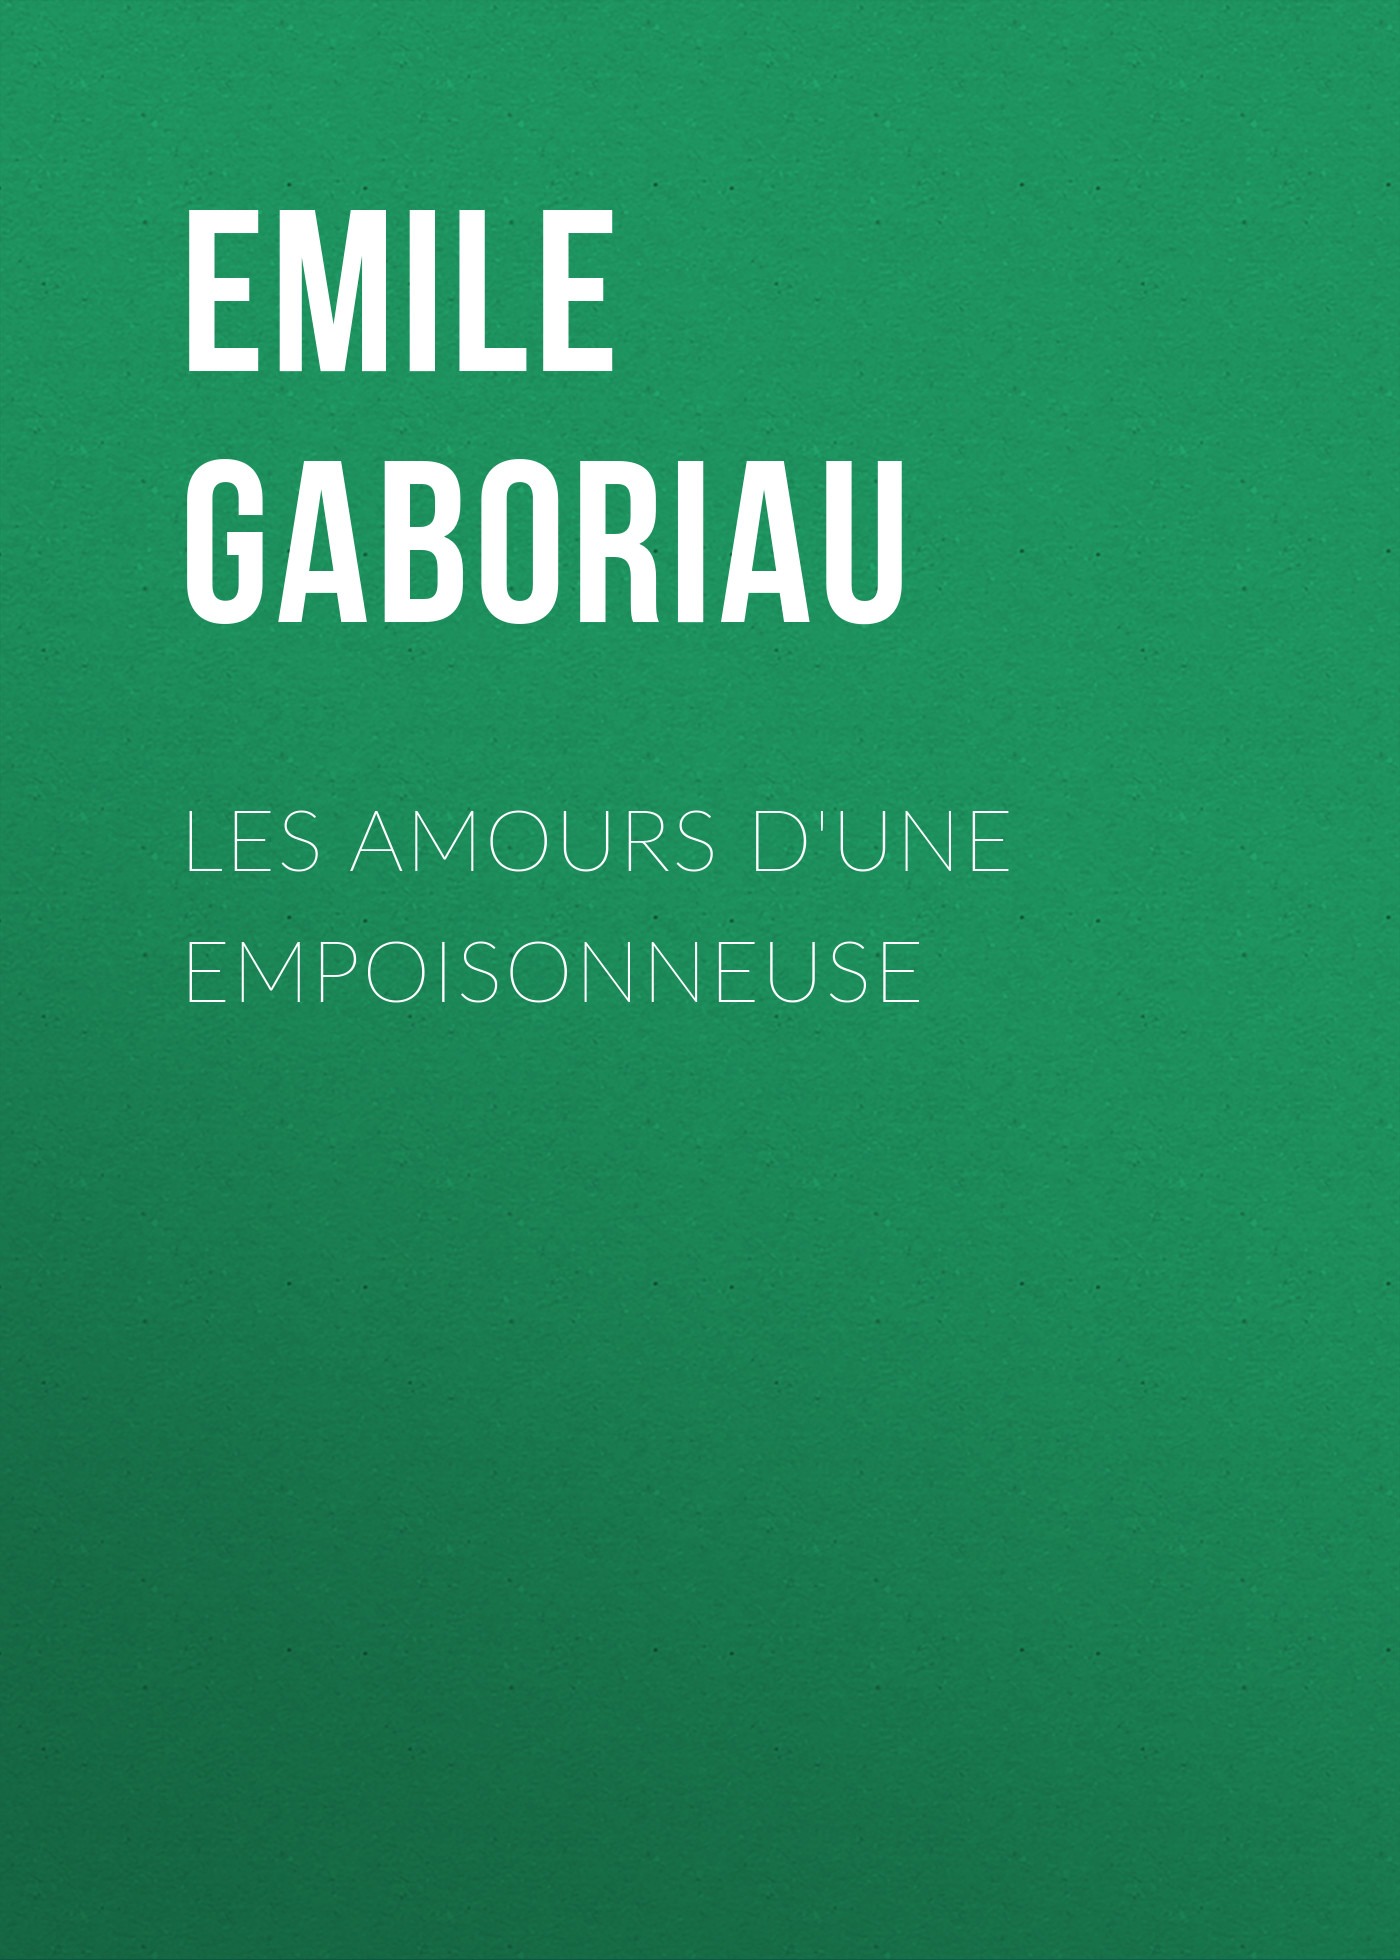 Книга Les amours d'une empoisonneuse из серии , созданная Emile Gaboriau, может относится к жанру Зарубежная старинная литература, Зарубежная классика. Стоимость электронной книги Les amours d'une empoisonneuse с идентификатором 24859667 составляет 0 руб.